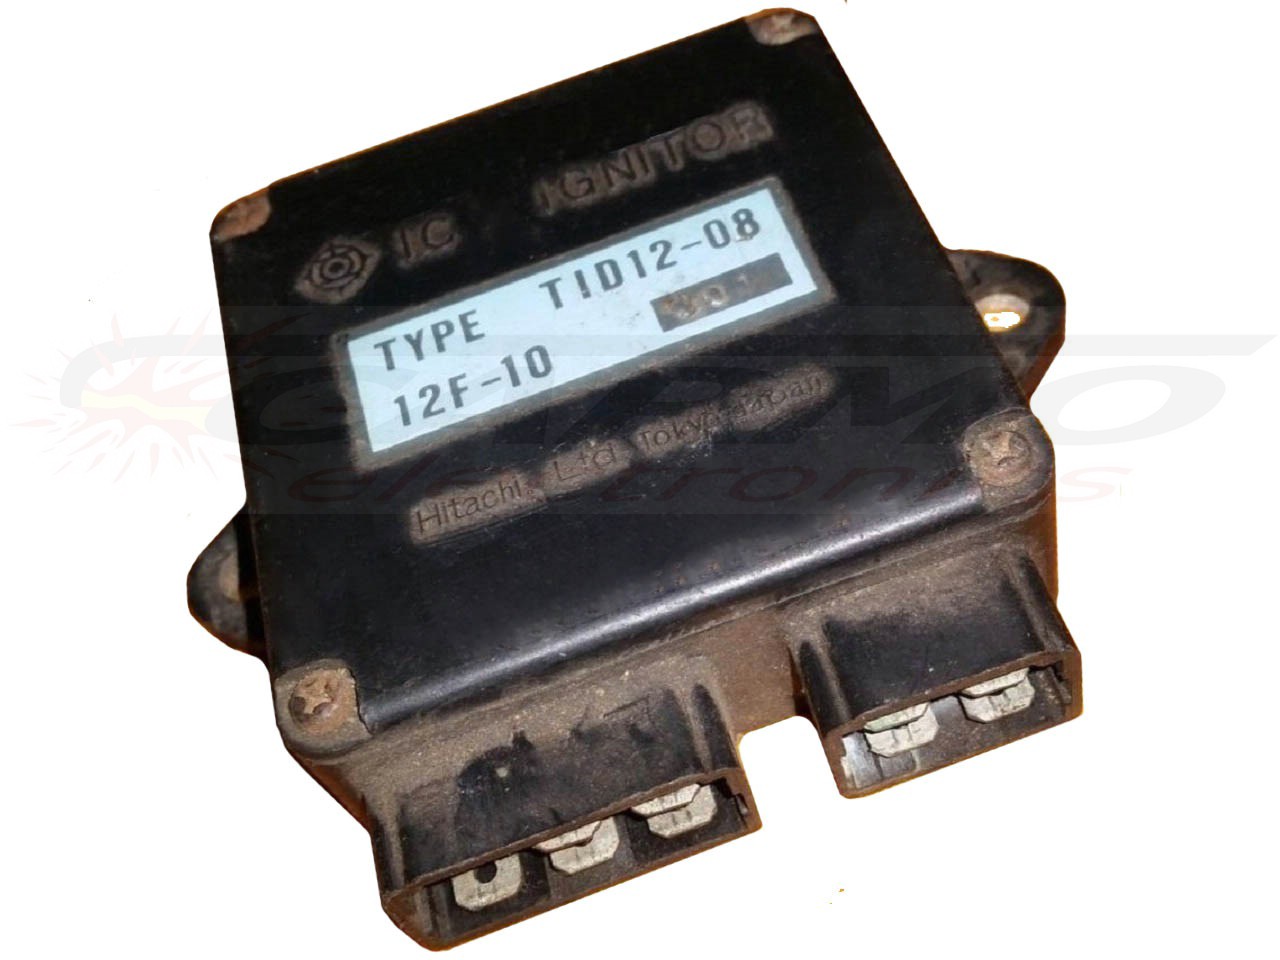 XS400 DOHC CDI dispositif de commande boîte noire (TID12-08, 12F-10)